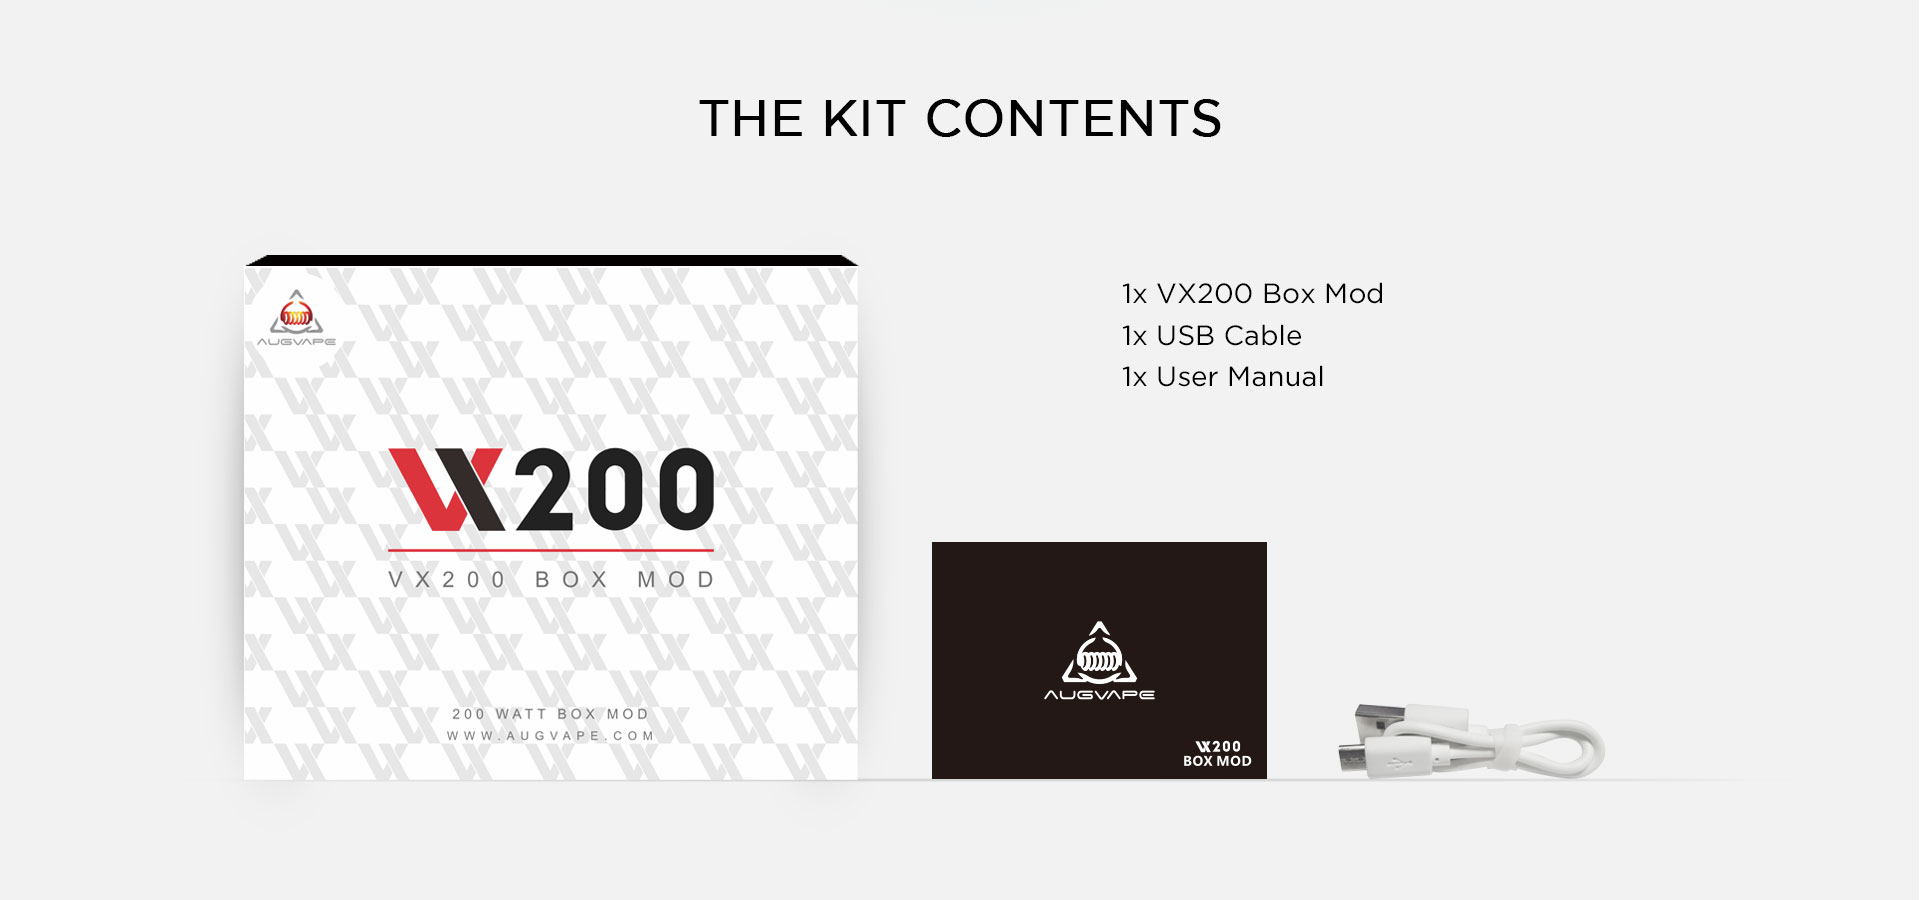 vx200 box mod